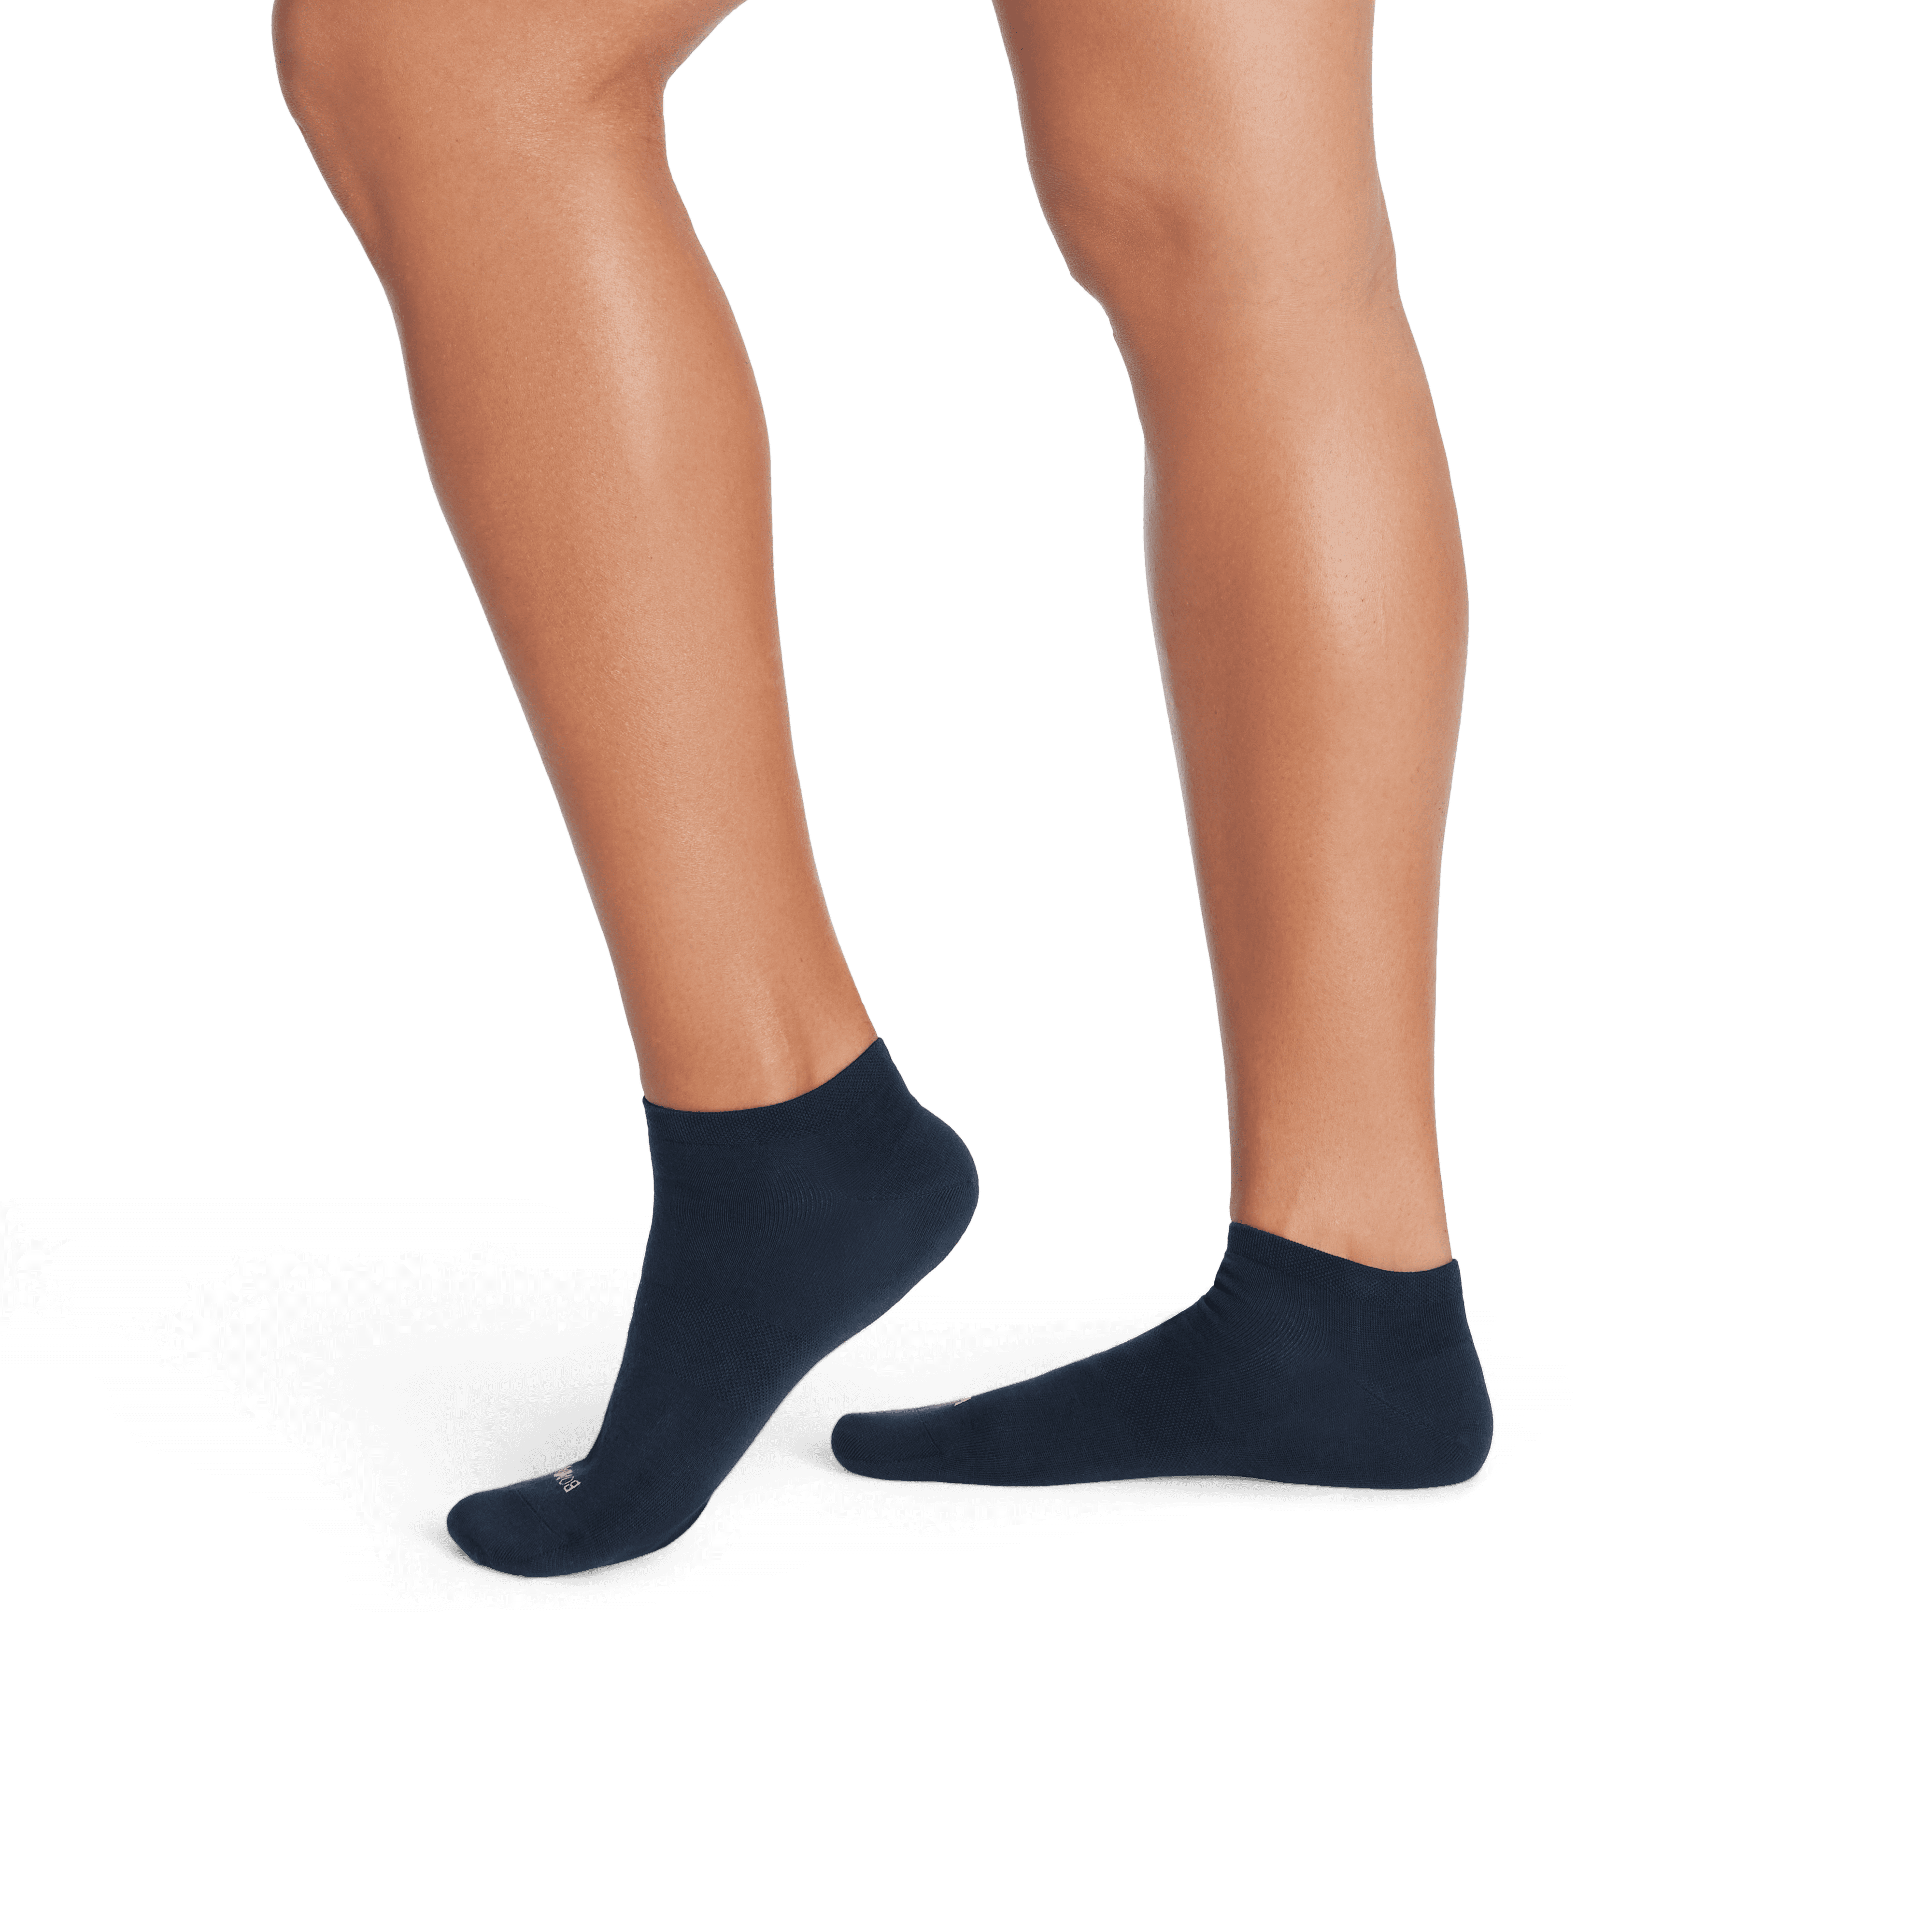 Ankle-bow sheer socks